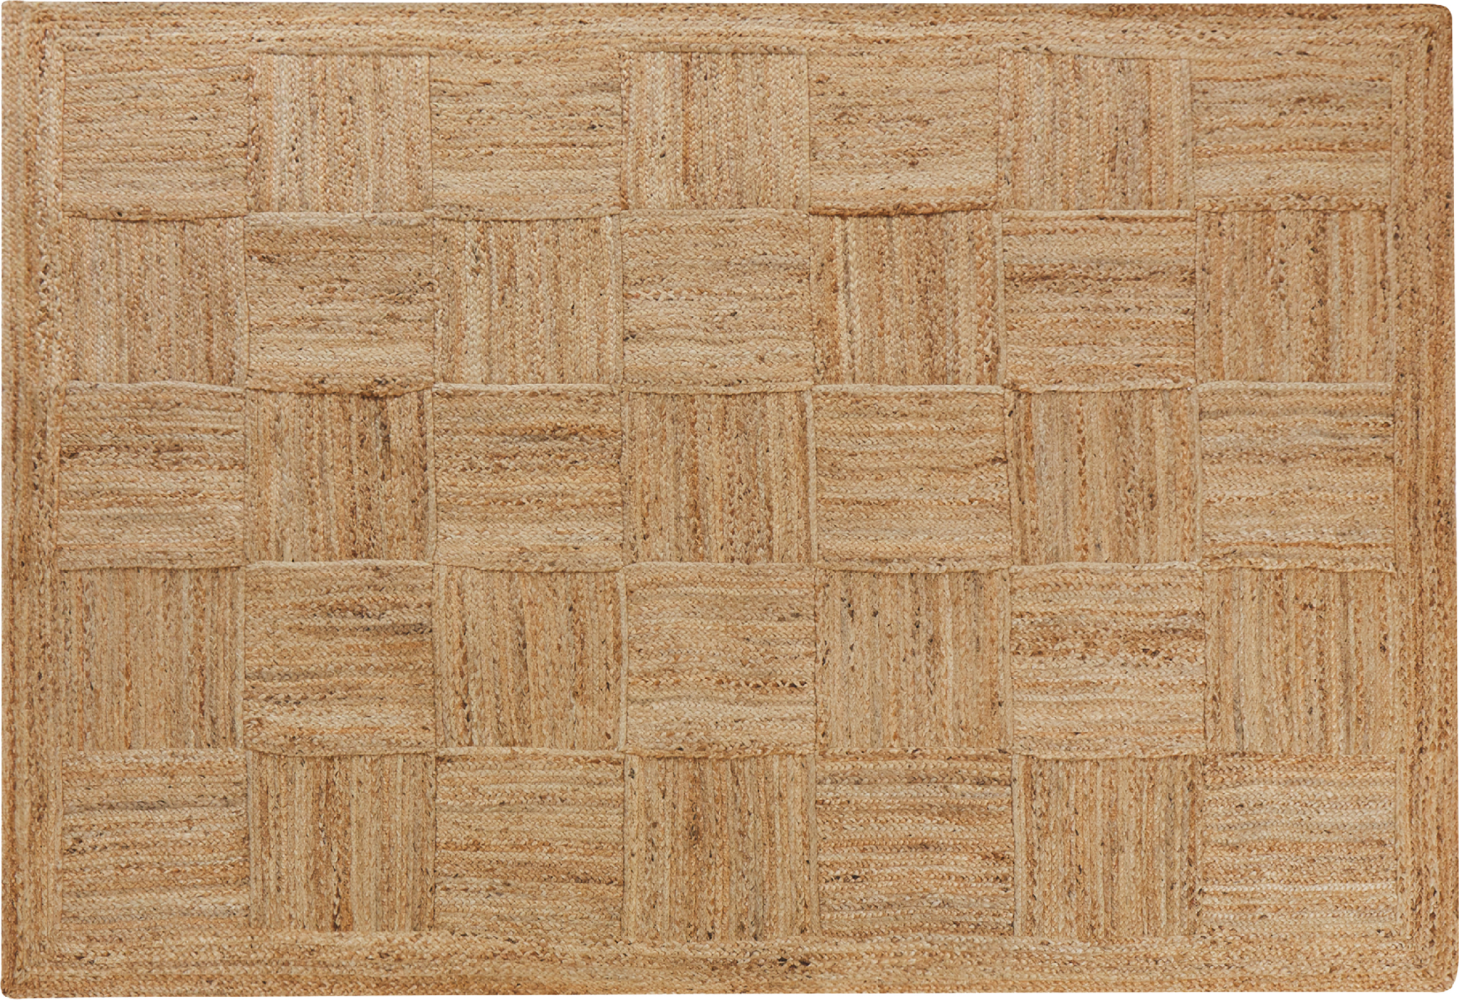 Teppich Jute beige 160 x 230 cm geometrisches Muster Kurzflor ESENTEPE Bild 1